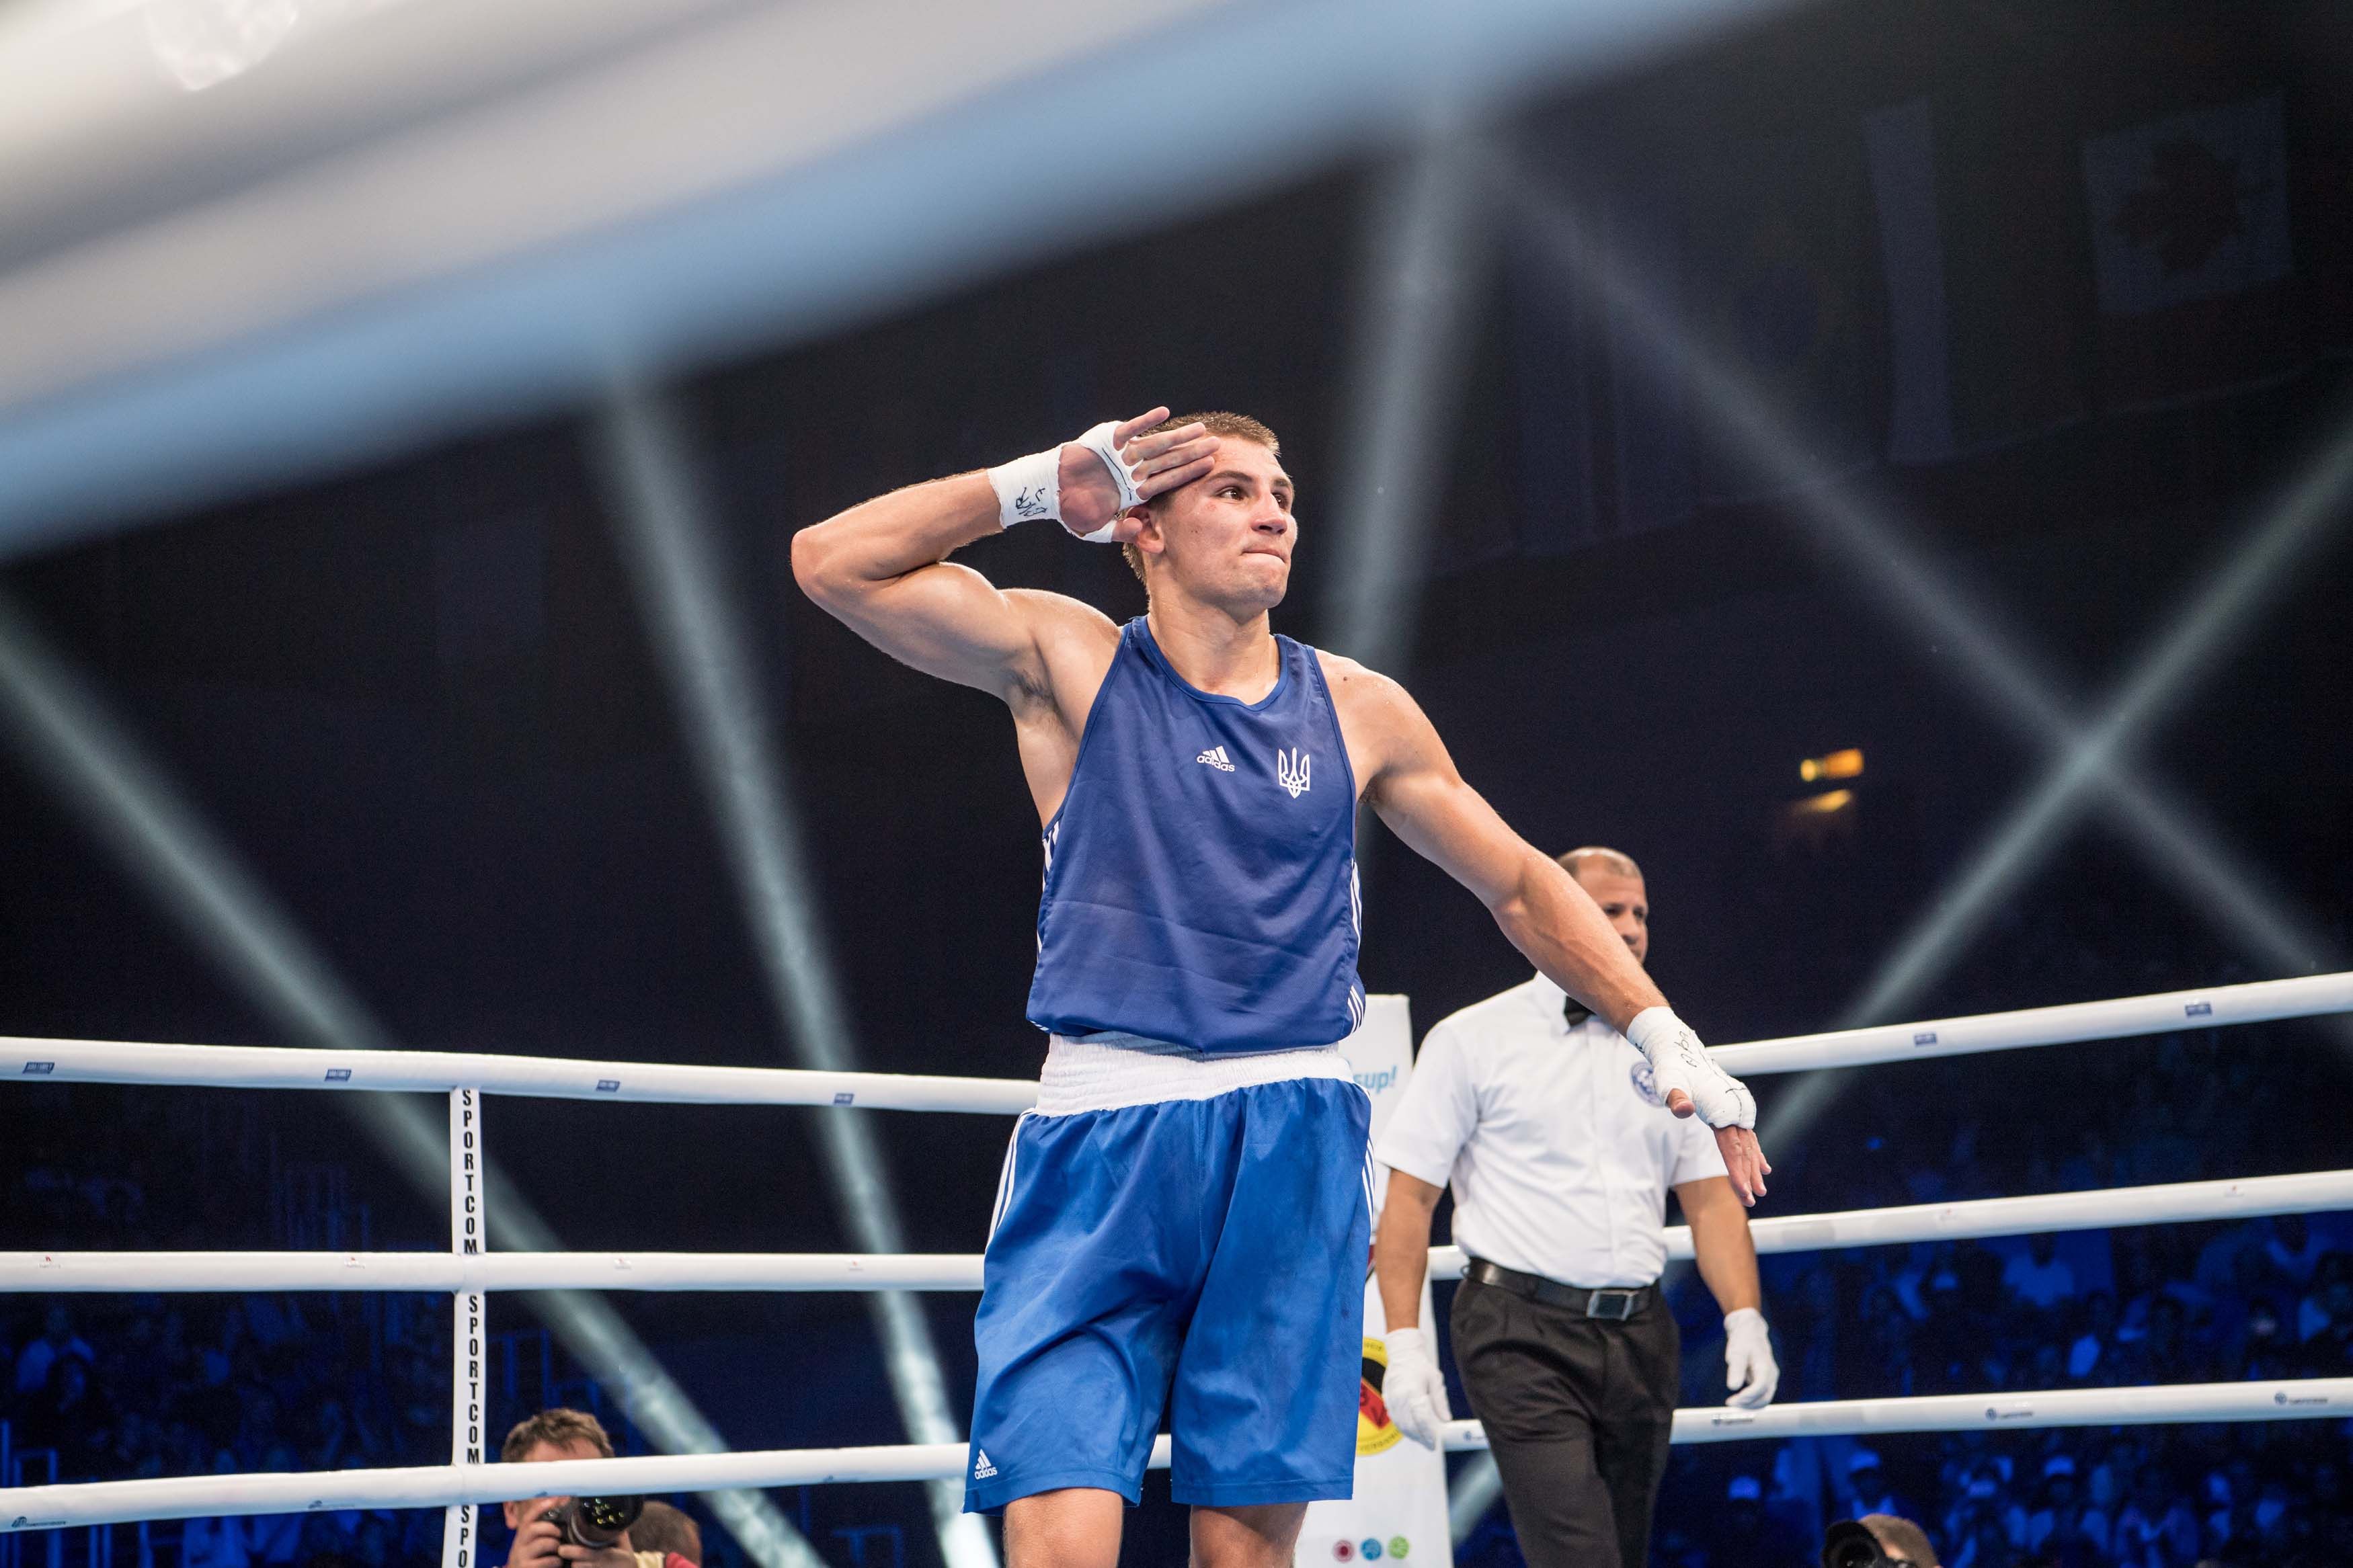 Украинский боксер Хижняк выиграл золото Европейских игр, уничтожив итальянца